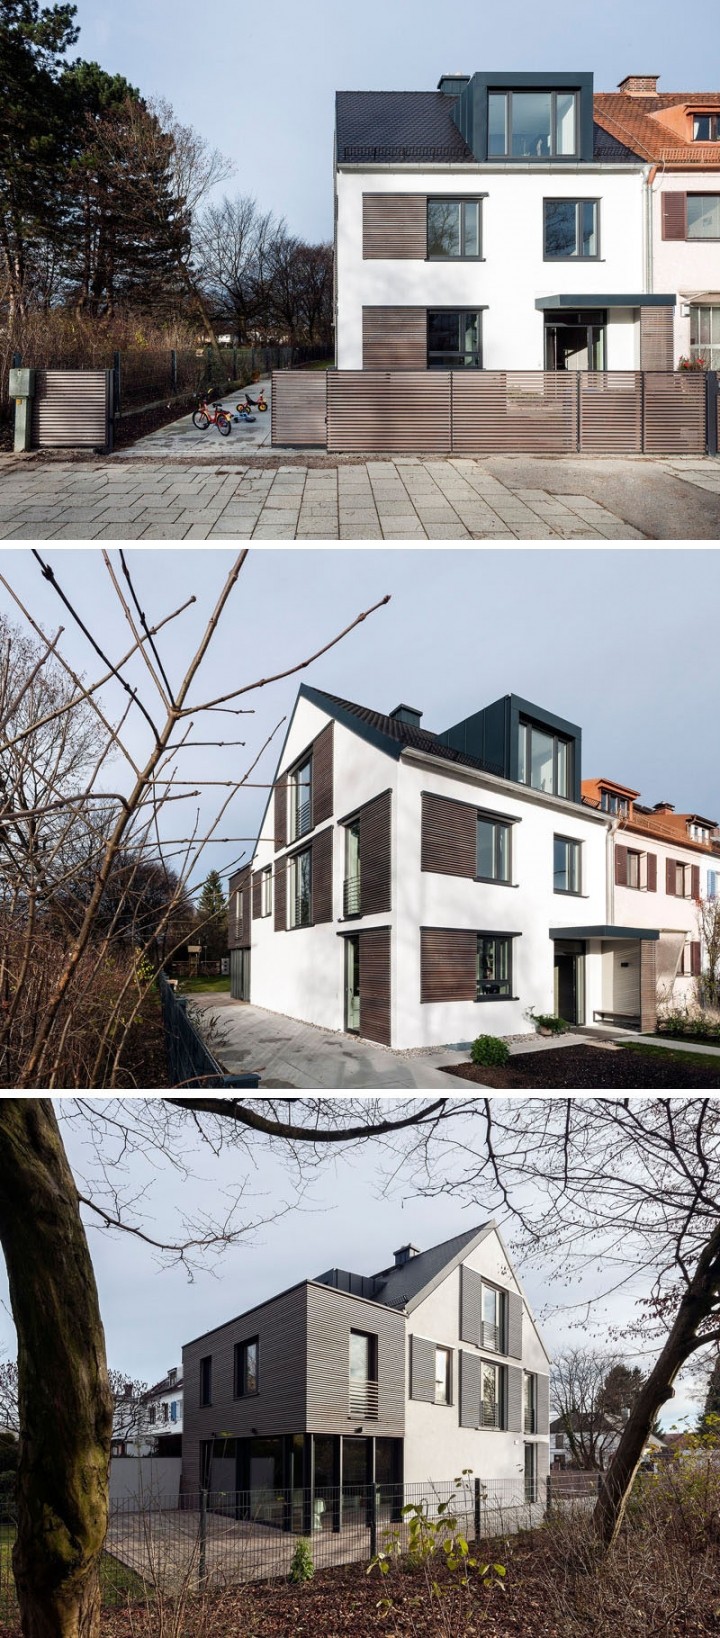 德国现代百叶窗的住宅设计 - ARCS Architekten_8.jpg